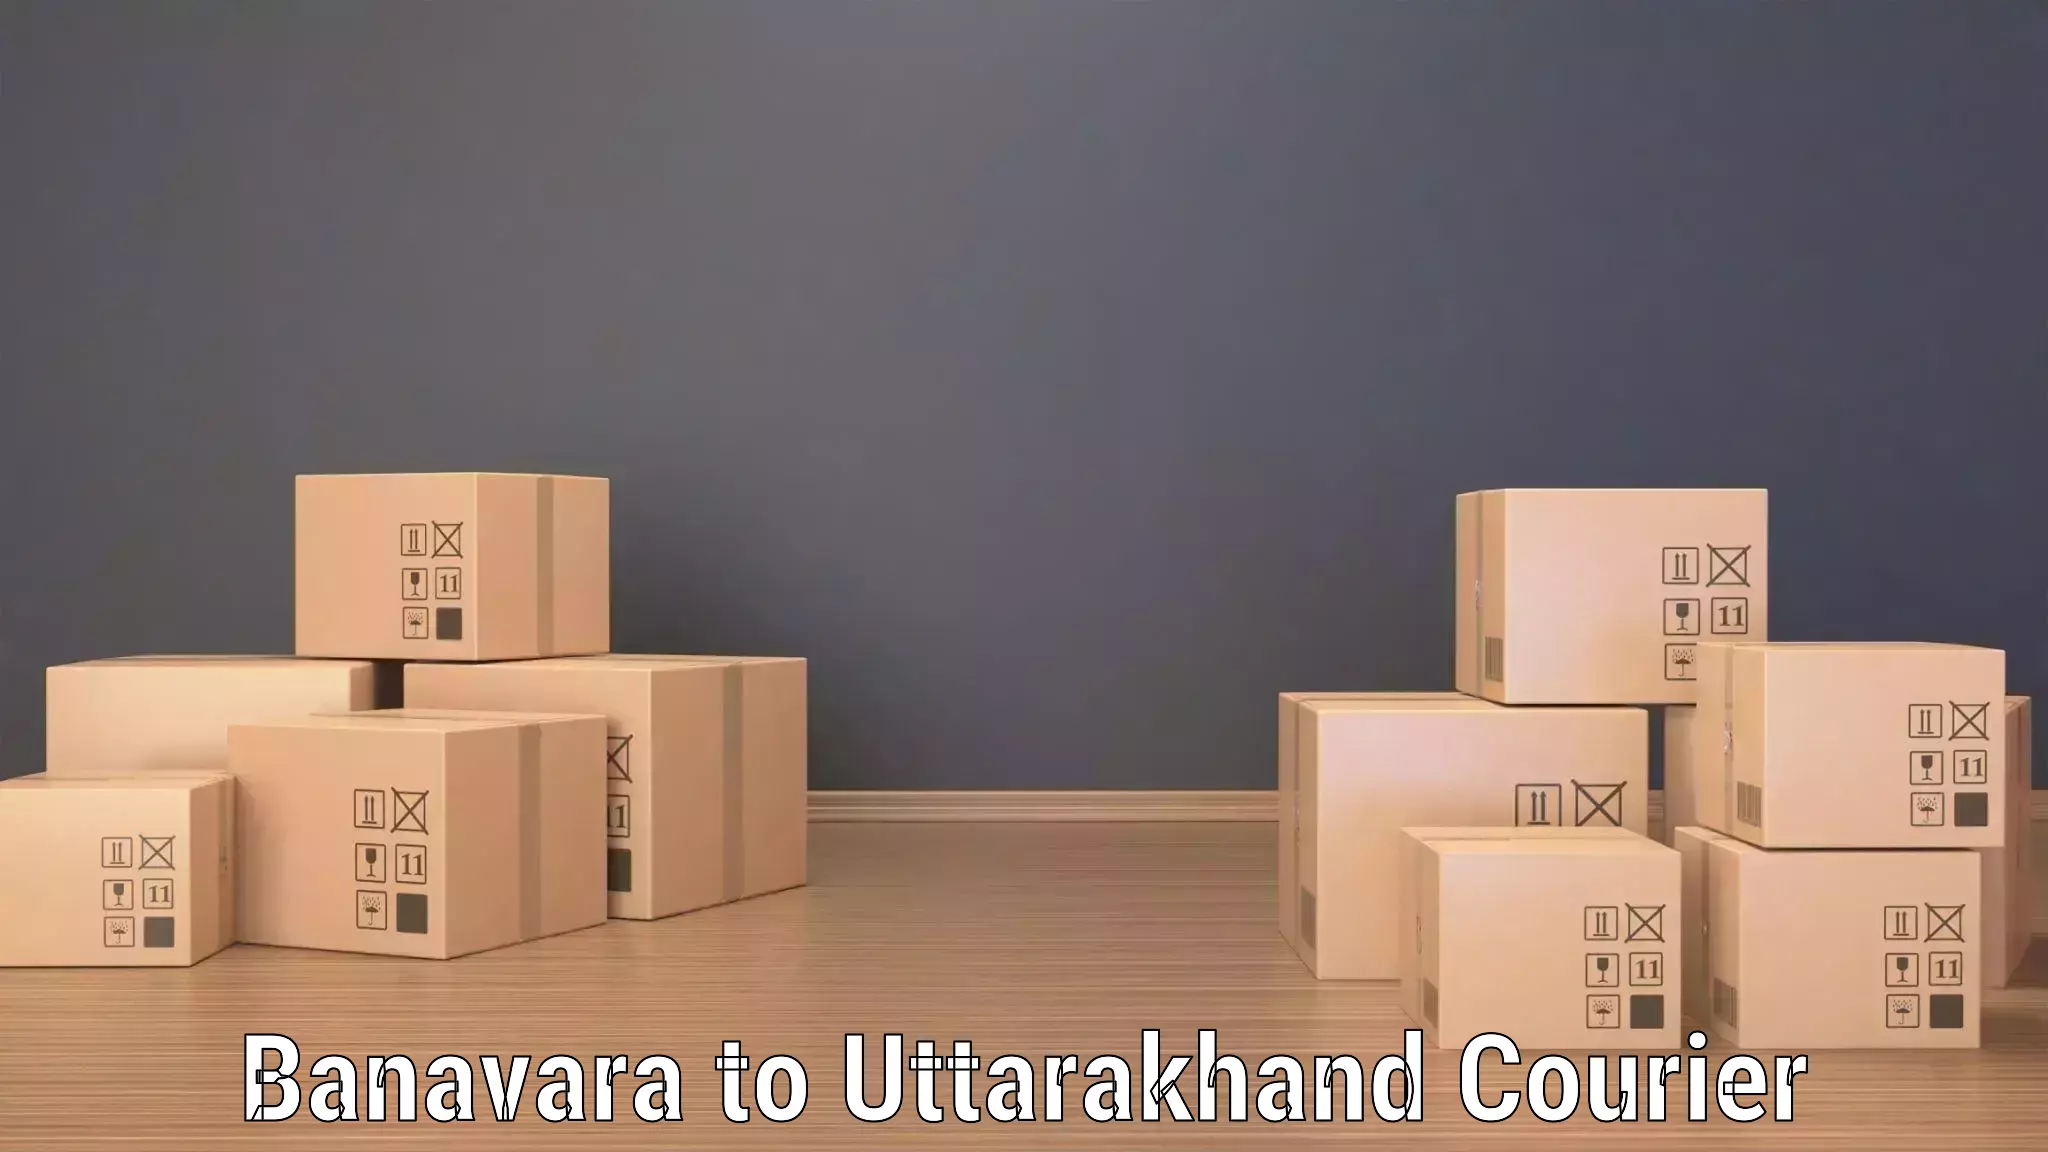 Global shipping solutions Banavara to Rudraprayag